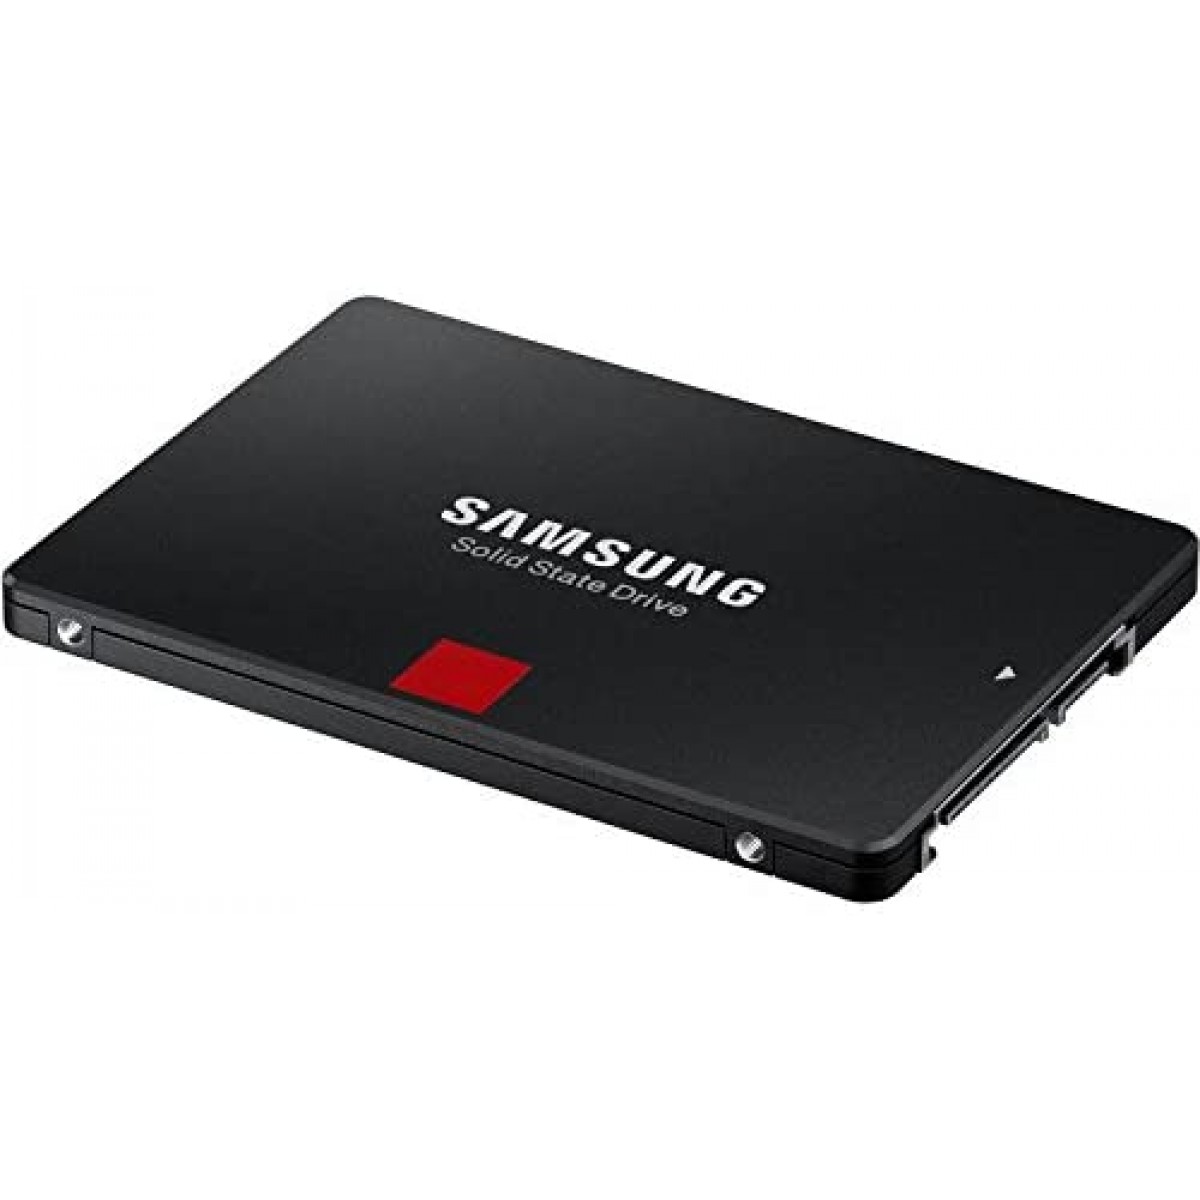 SSD Samsung 860 PRO, 4TB, Sata III, MZ-76P4T0E